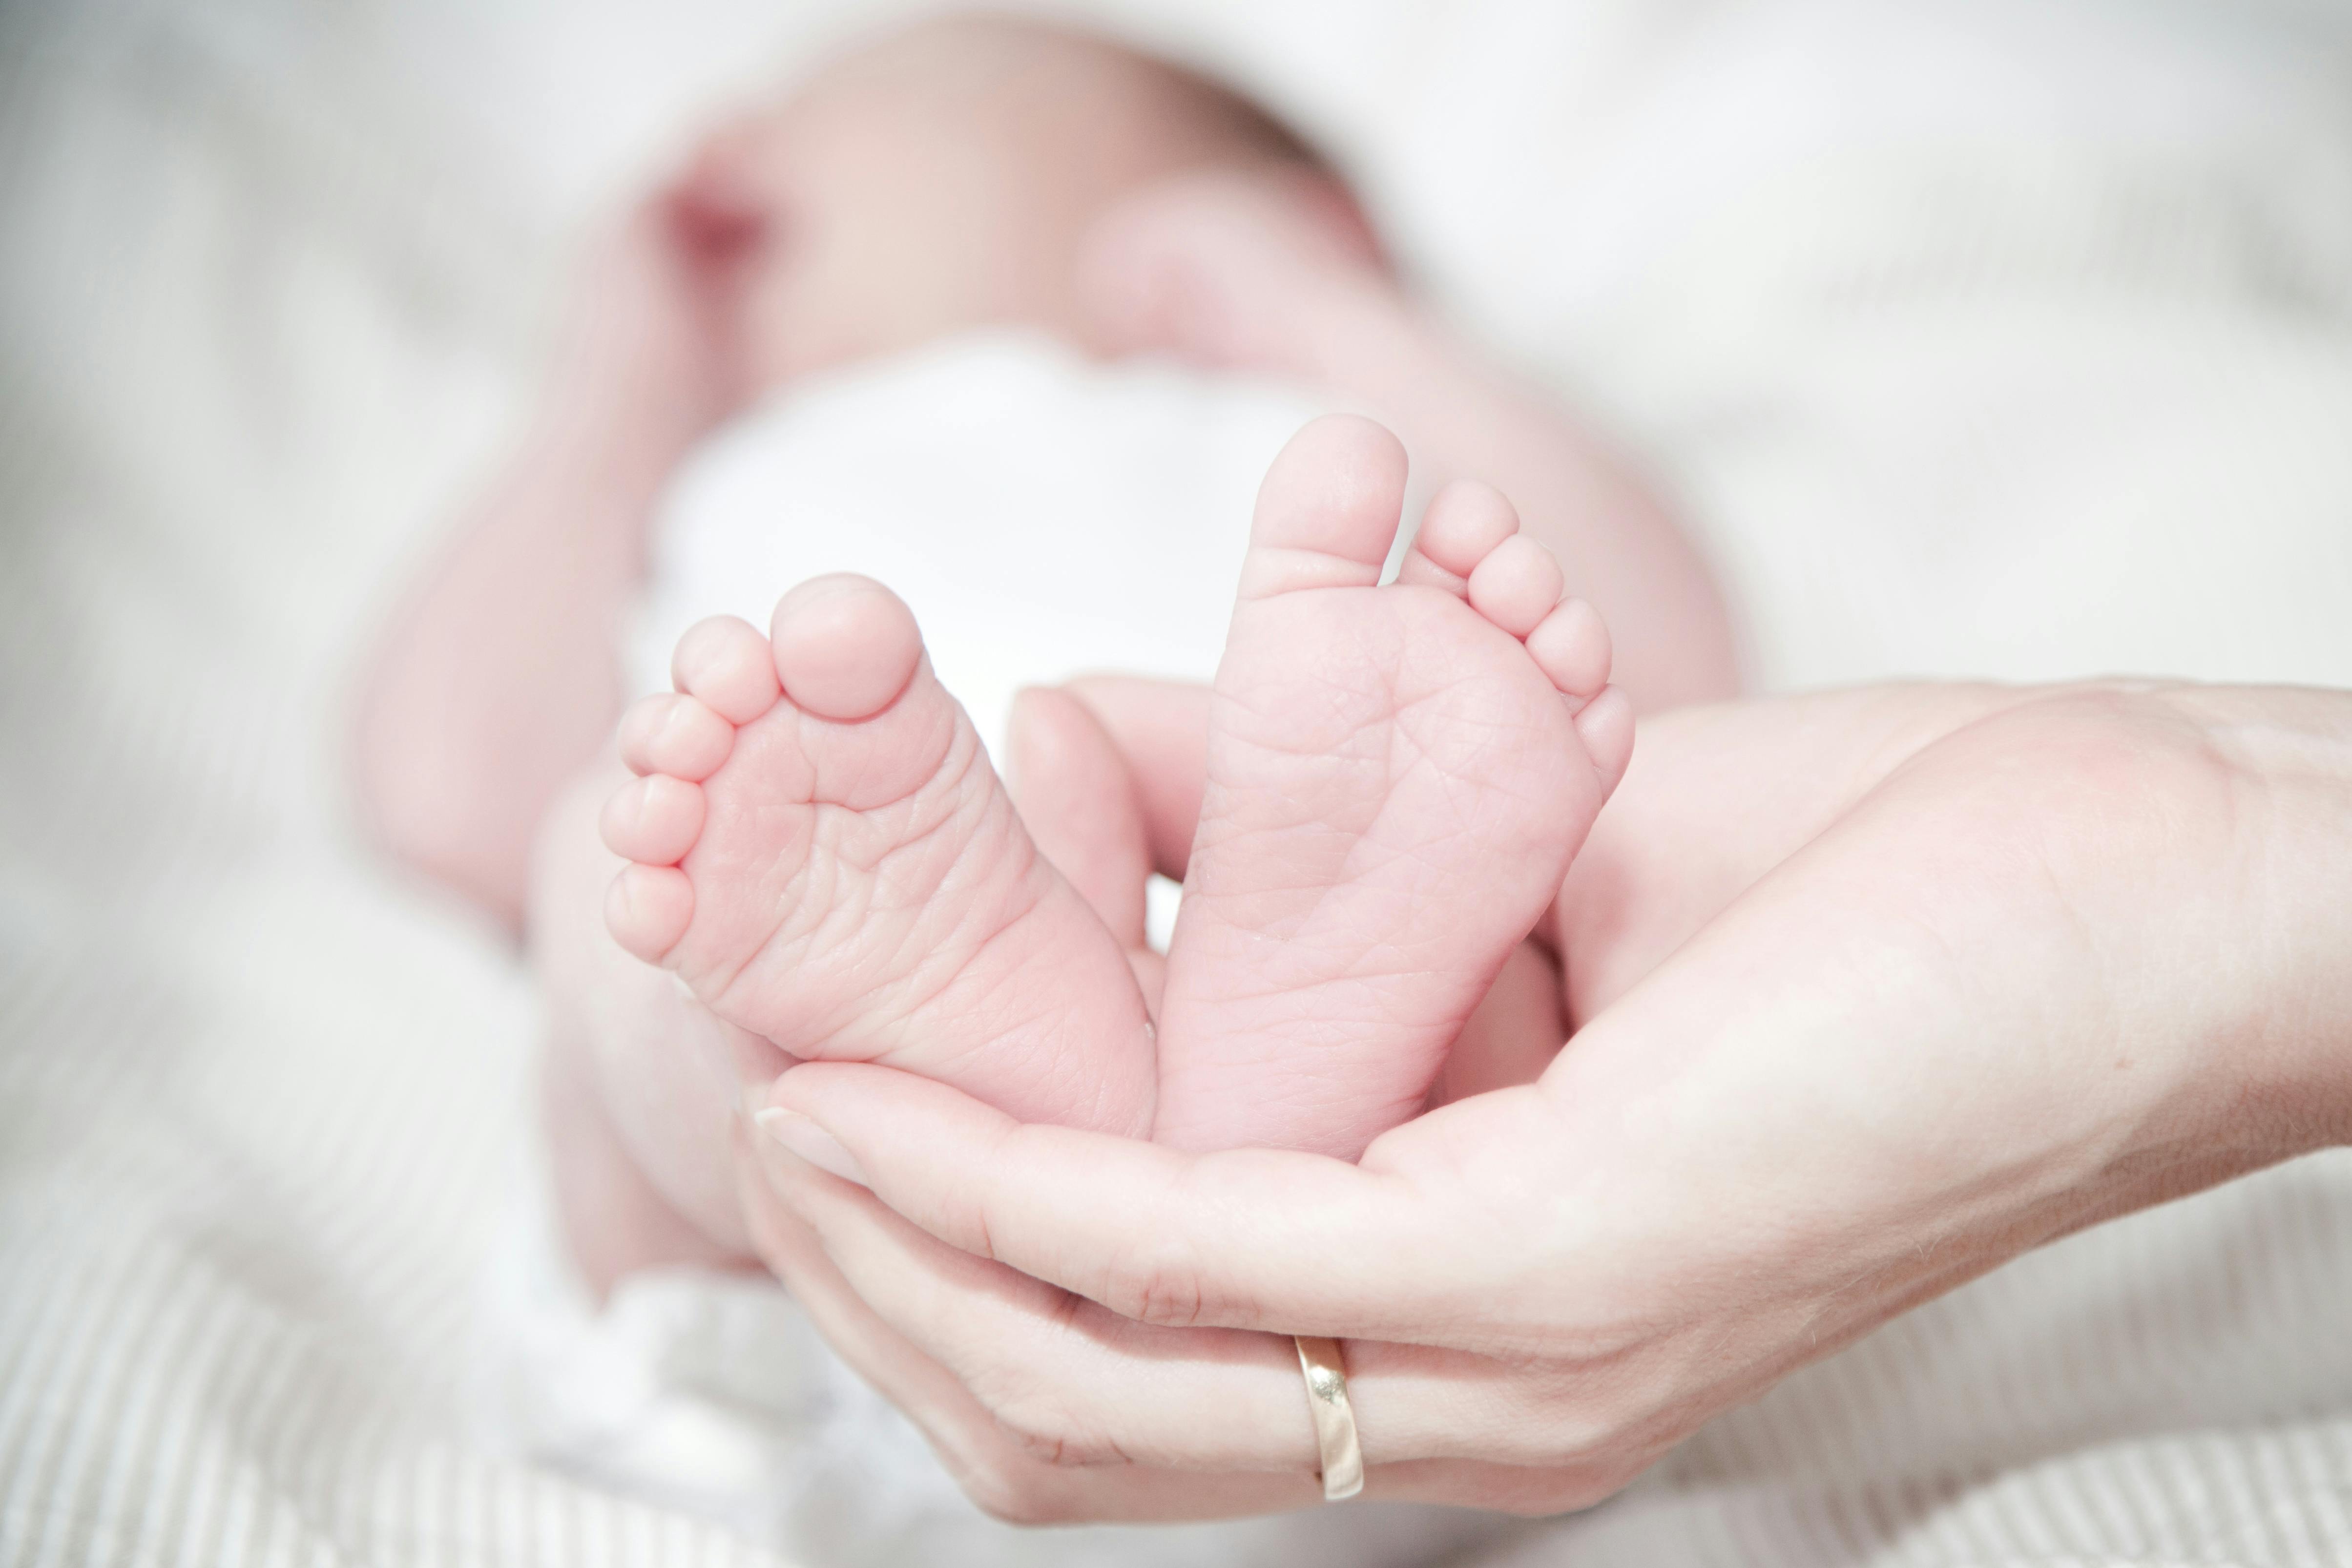 Eine Frau, die die Füße ihres neugeborenen Babys hält | Quelle: Pexels